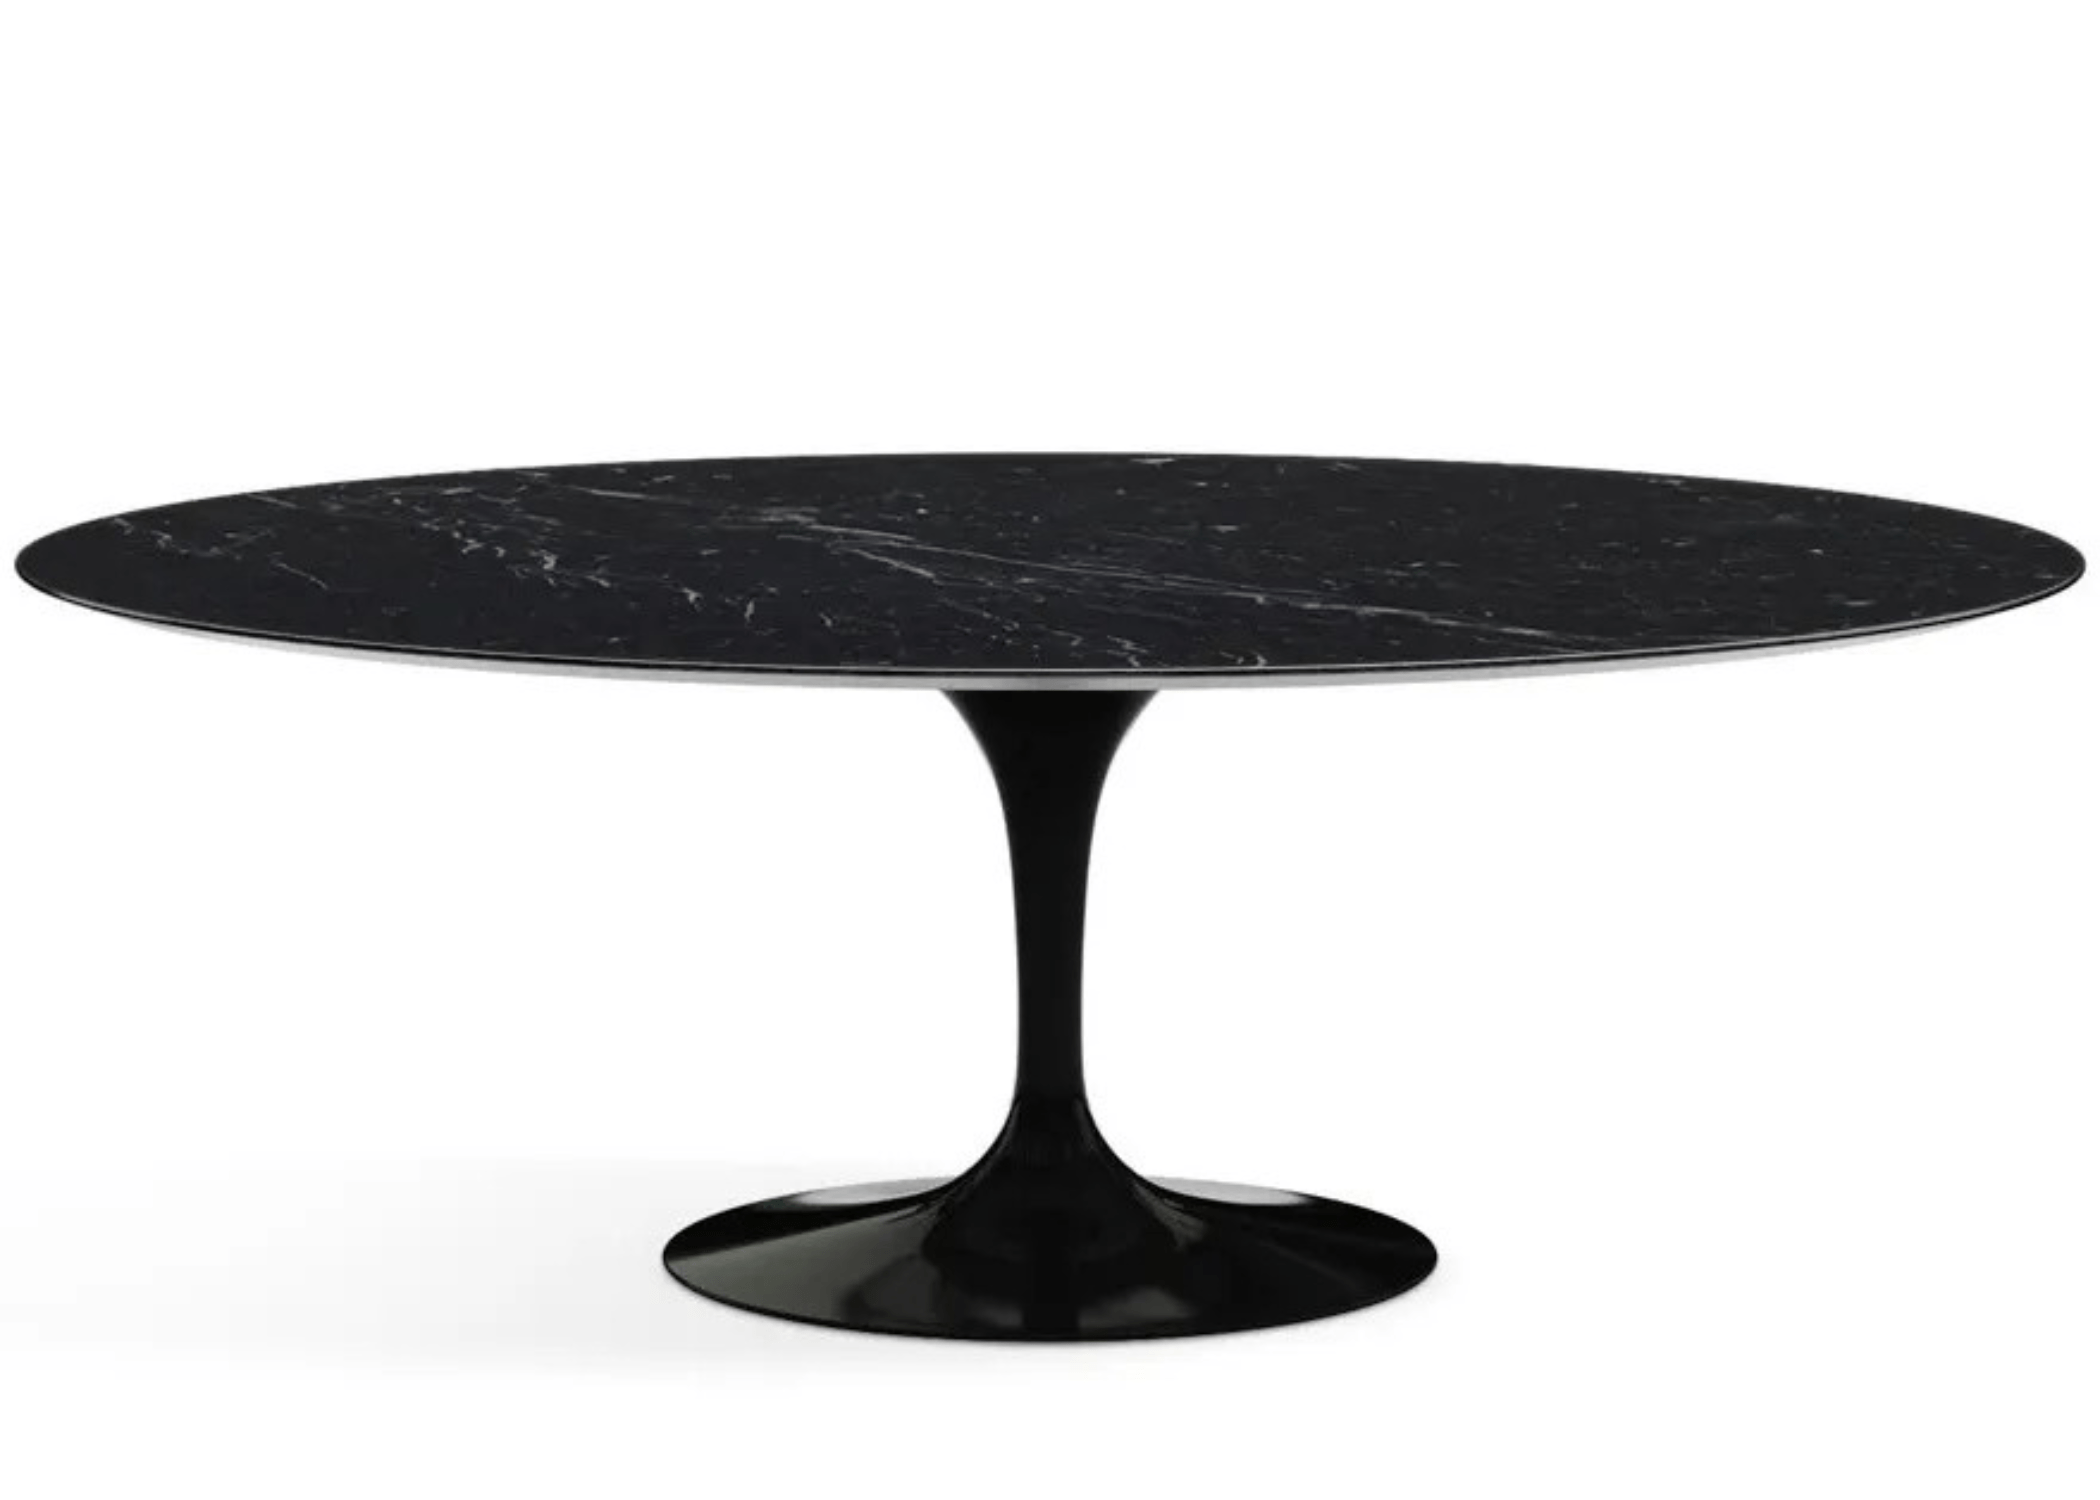 Tampo da mesa Saarinen Oval em vidro marmorizado, adicionando um toque de luxo e elegante ao ambiente.